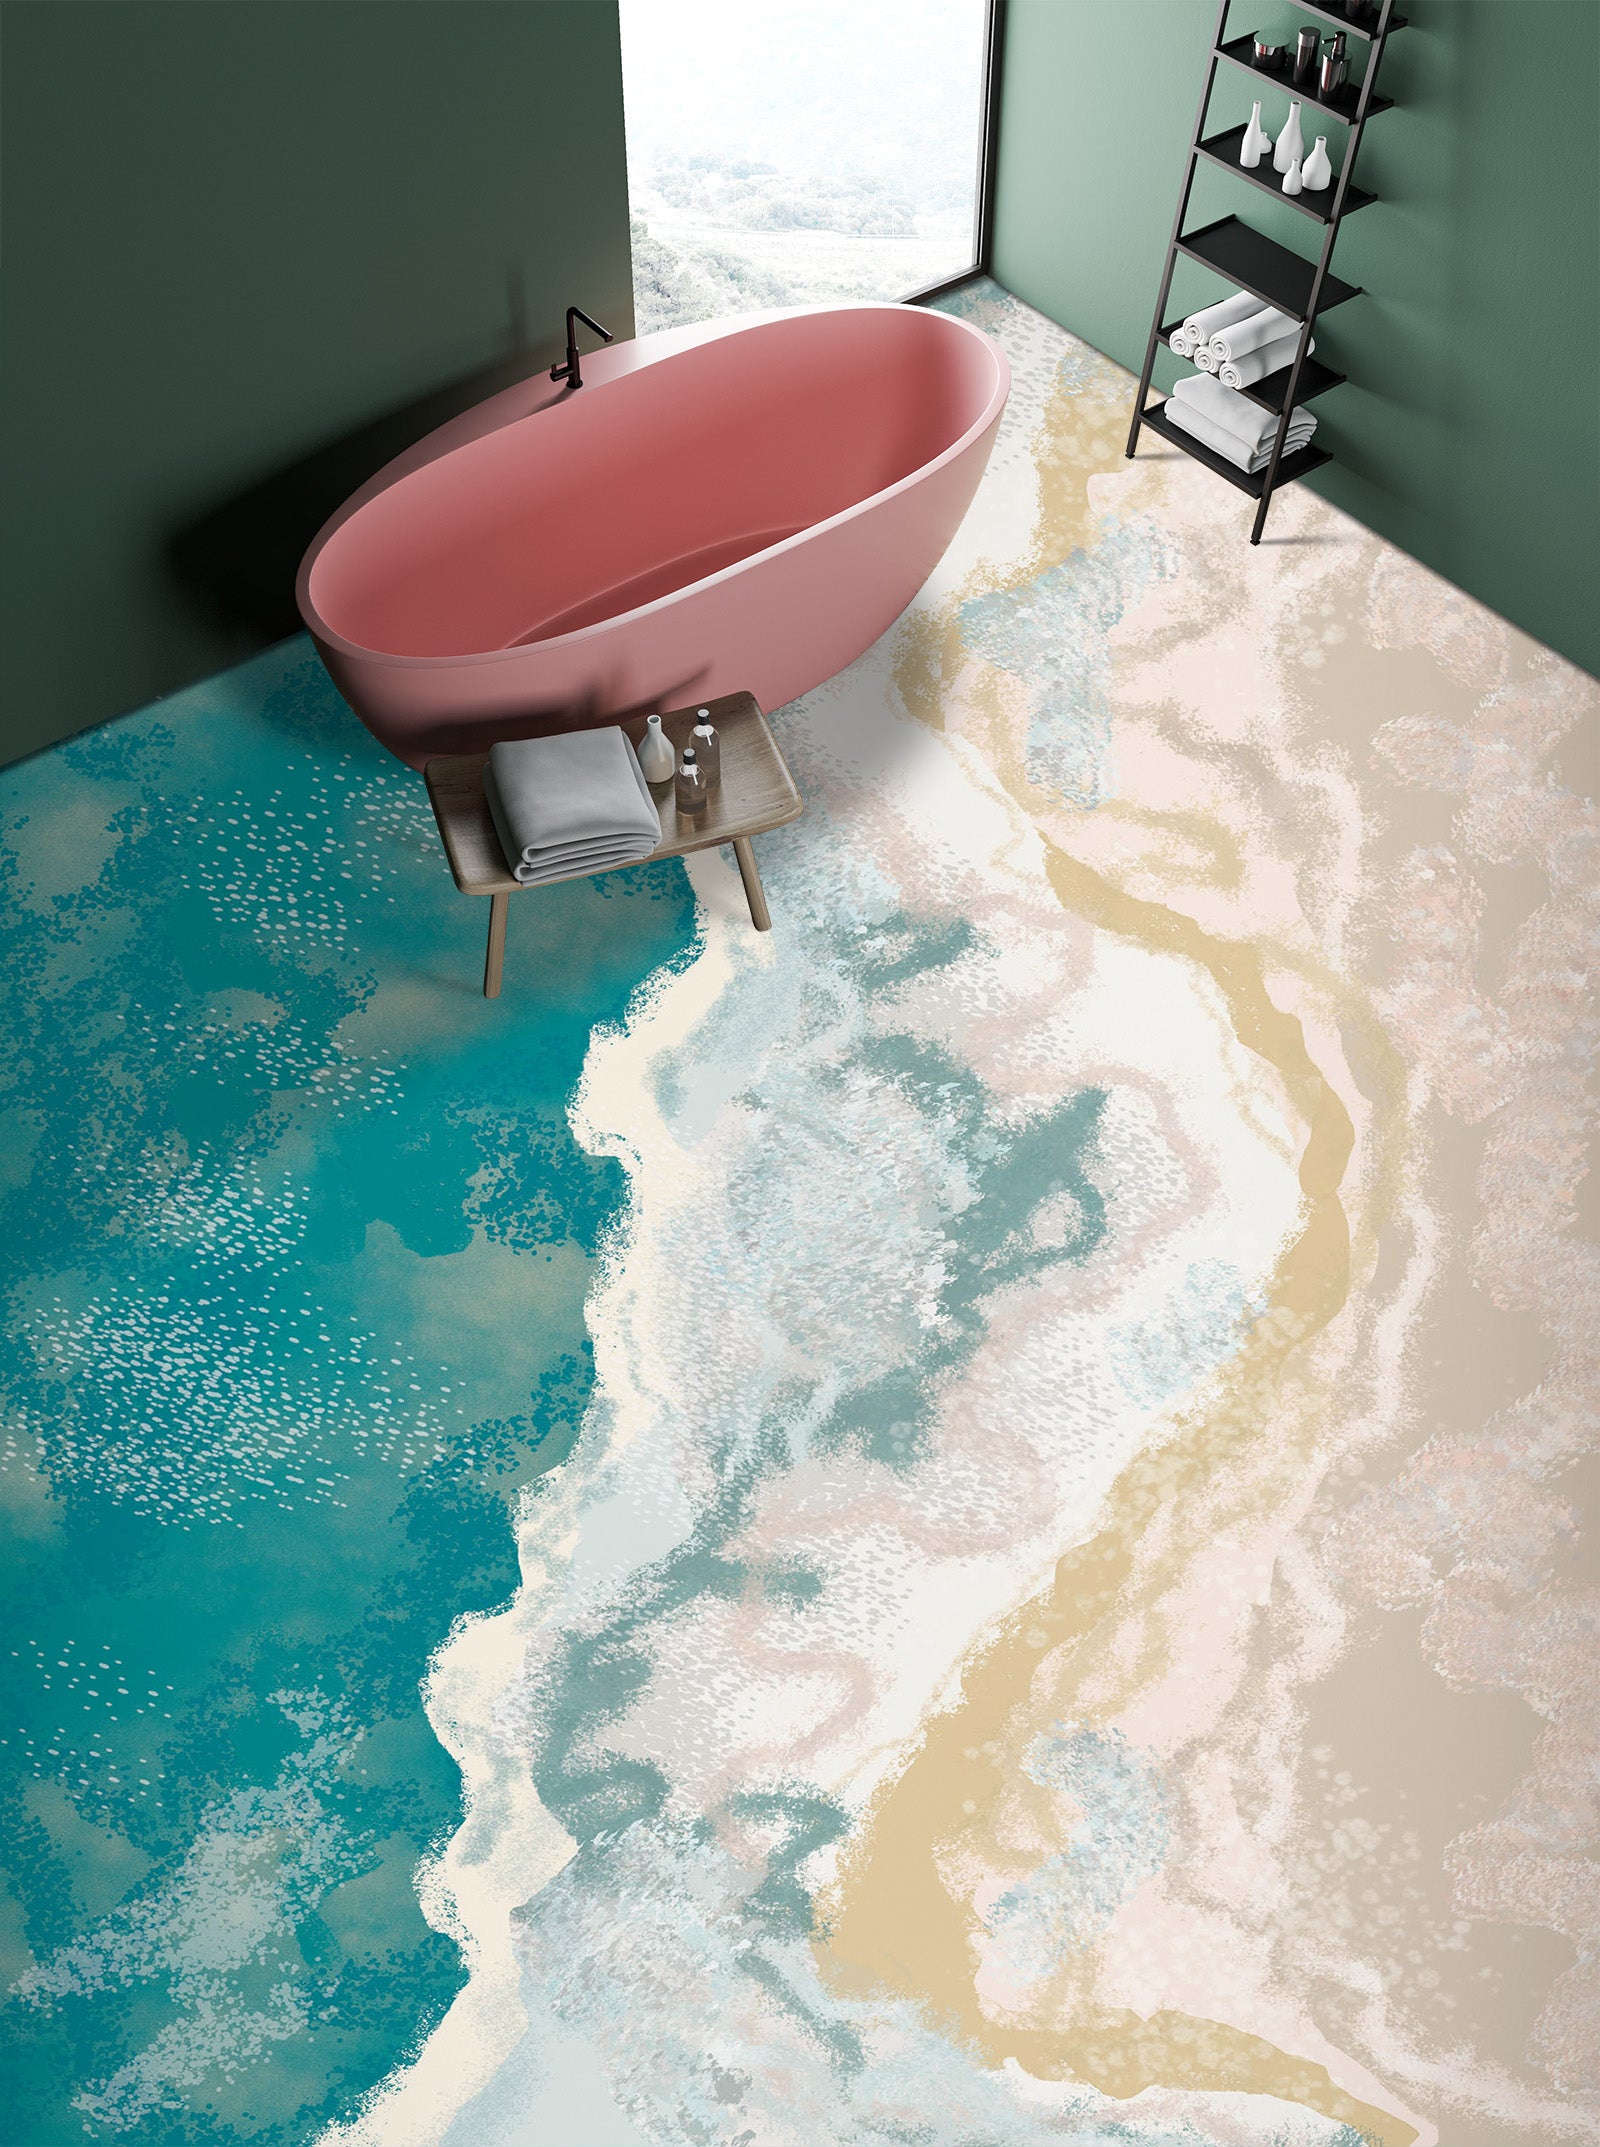 3D Elegant Beach Texture 601 Floor Mural  Wallpaper Murals Rug & Mat Print Epoxy waterproof bath floor